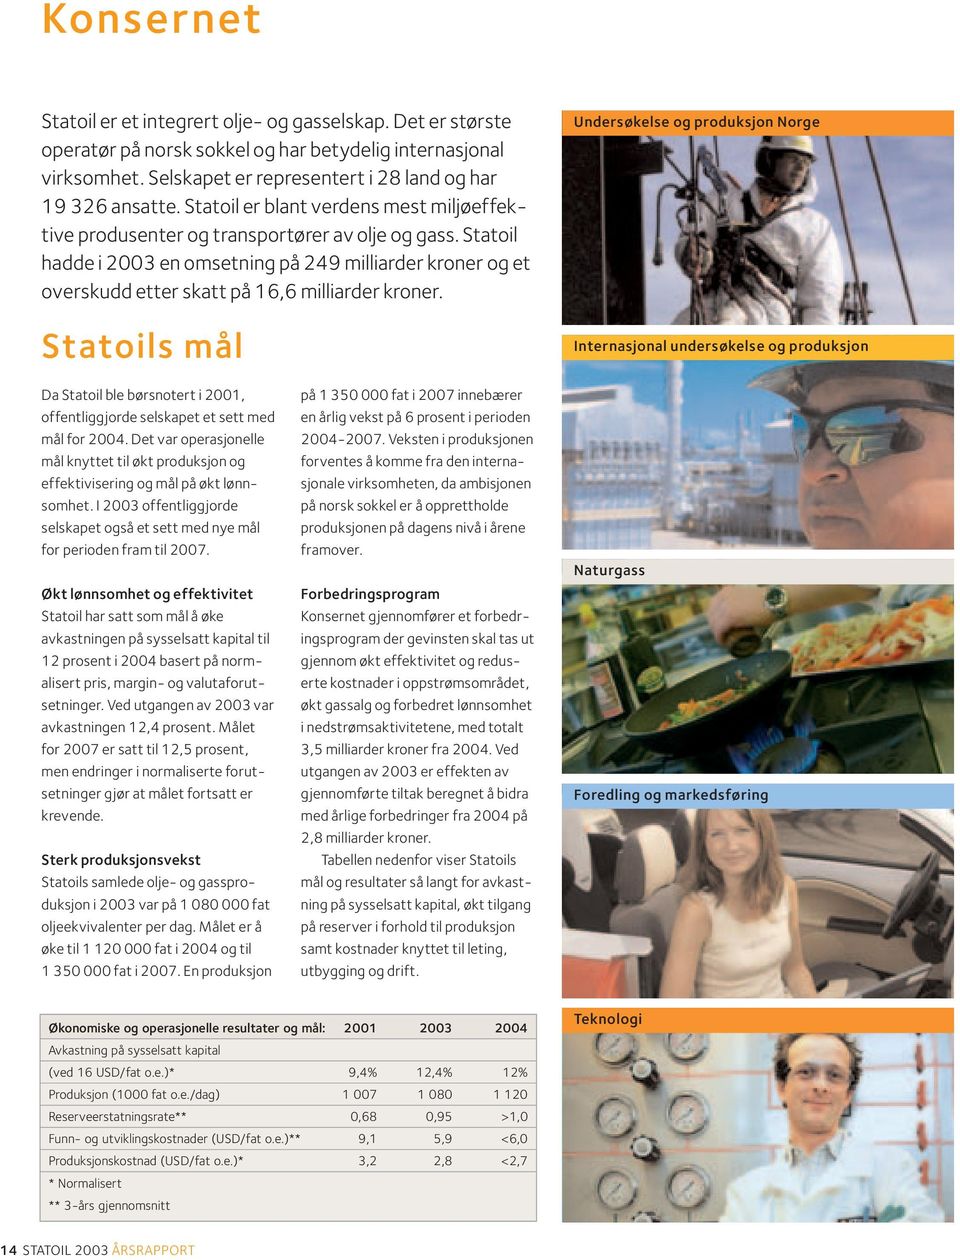 Statoil hadde i 2003 en omsetning på 249 milliarder kroner og et overskudd etter skatt på 16,6 milliarder kroner.